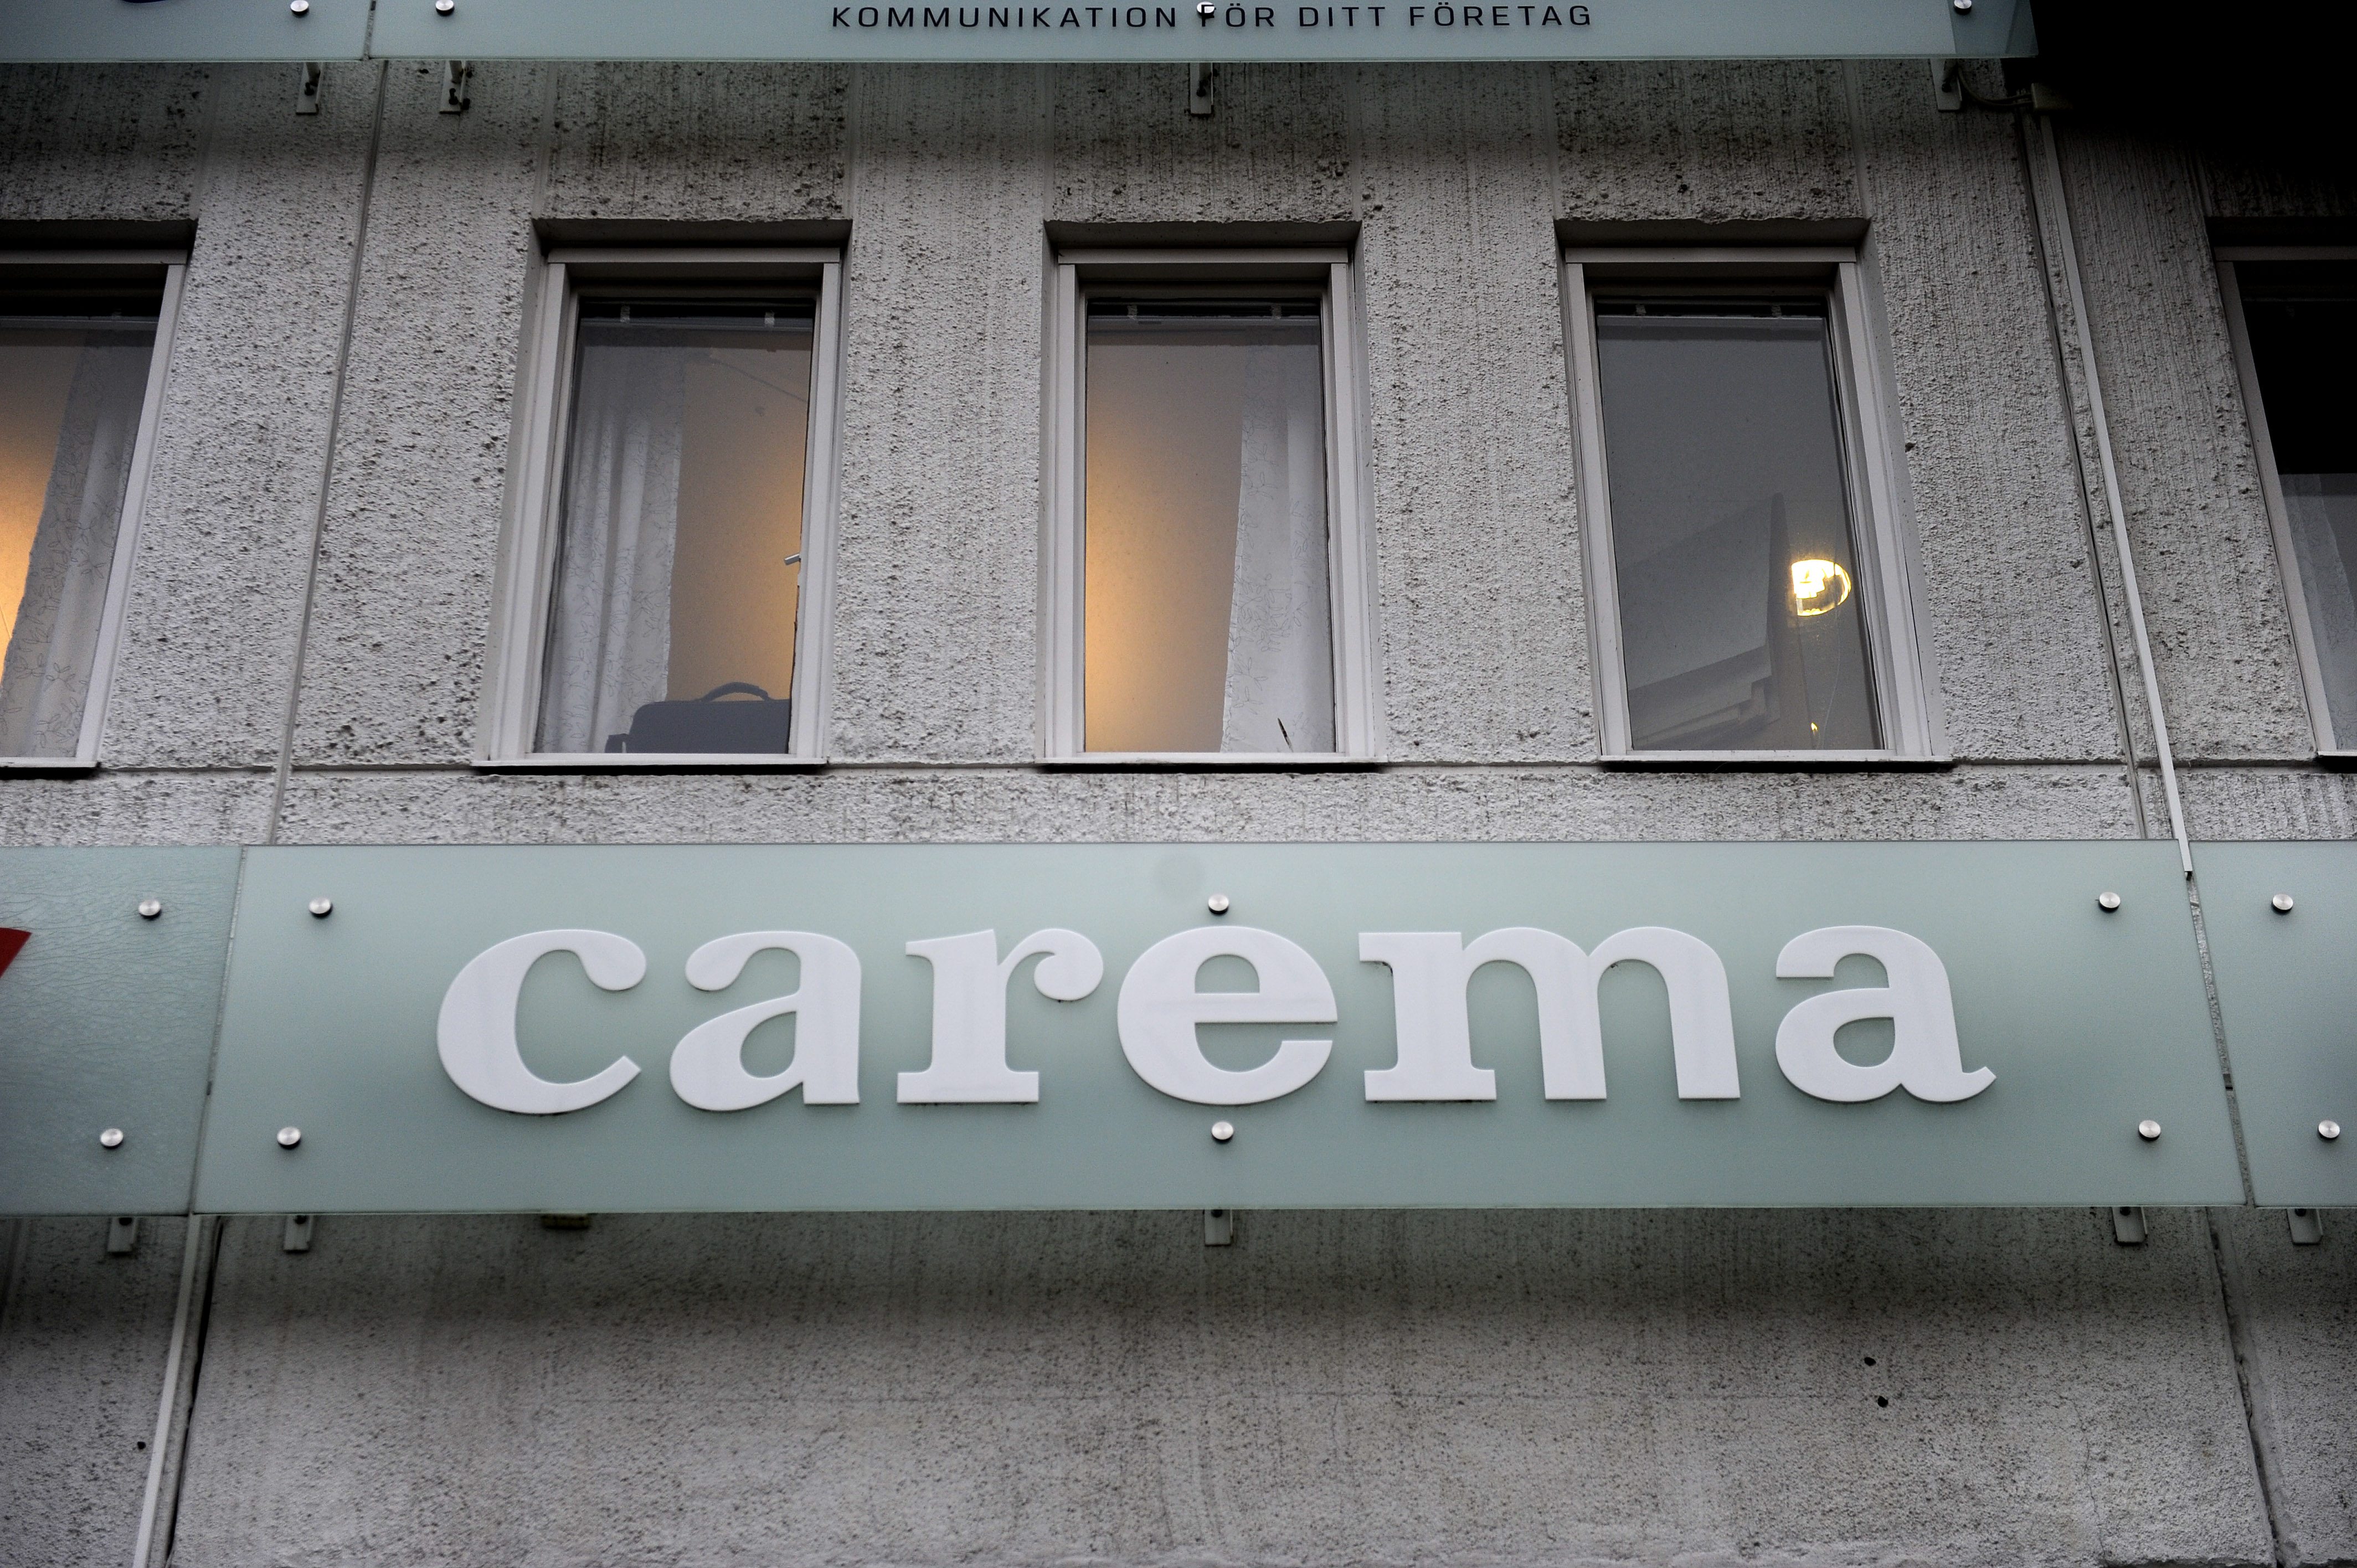 Carema kopplas återigen samman med Moderaterna, den här gången har Stockholms stad köpt mediahantering av PR-byrån Kreab, som har tydliga kopplingar till partiet.